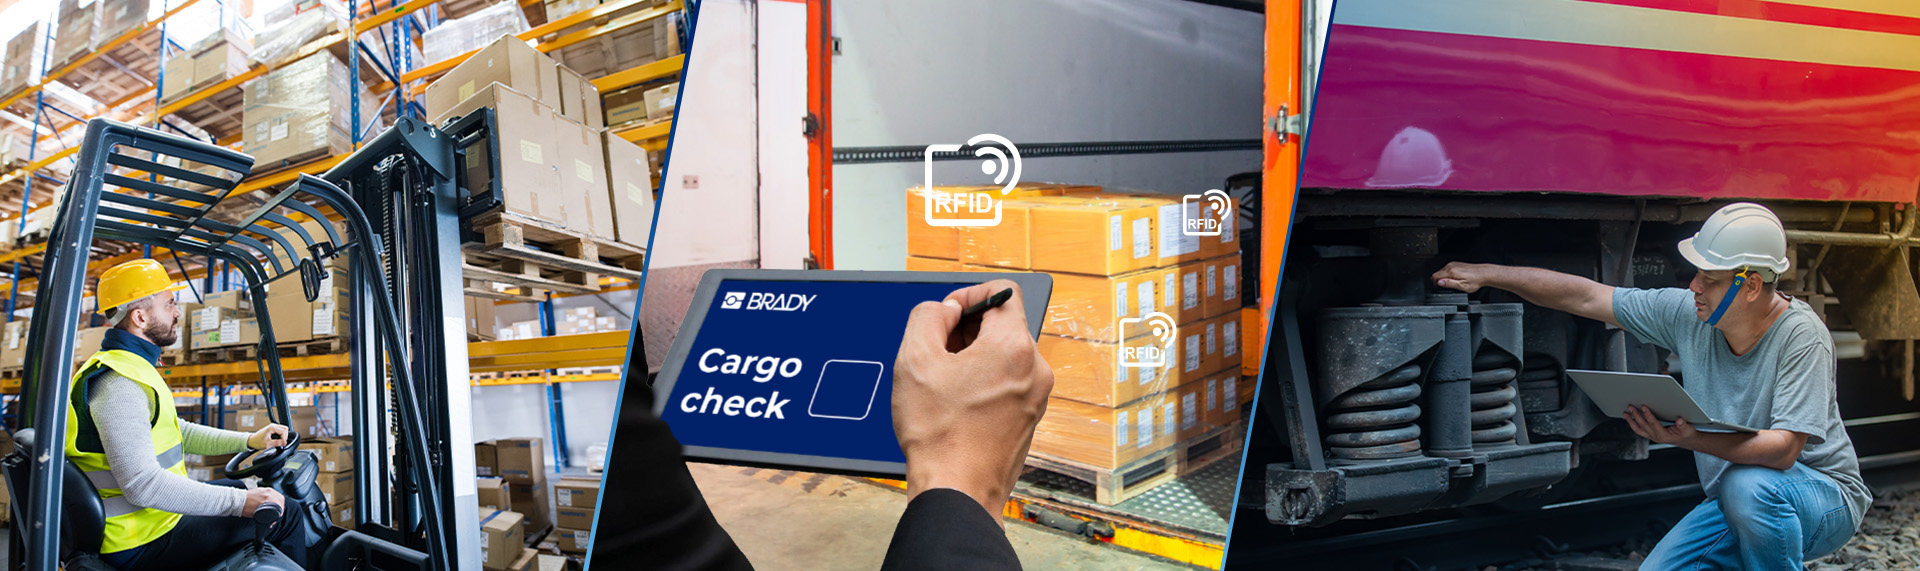 Collage di tre immagini dell’utilizzo della tecnologia RFID in diverse applicazioni: in un magazzino, all’interno di un camion e sotto un macchinario pesante.